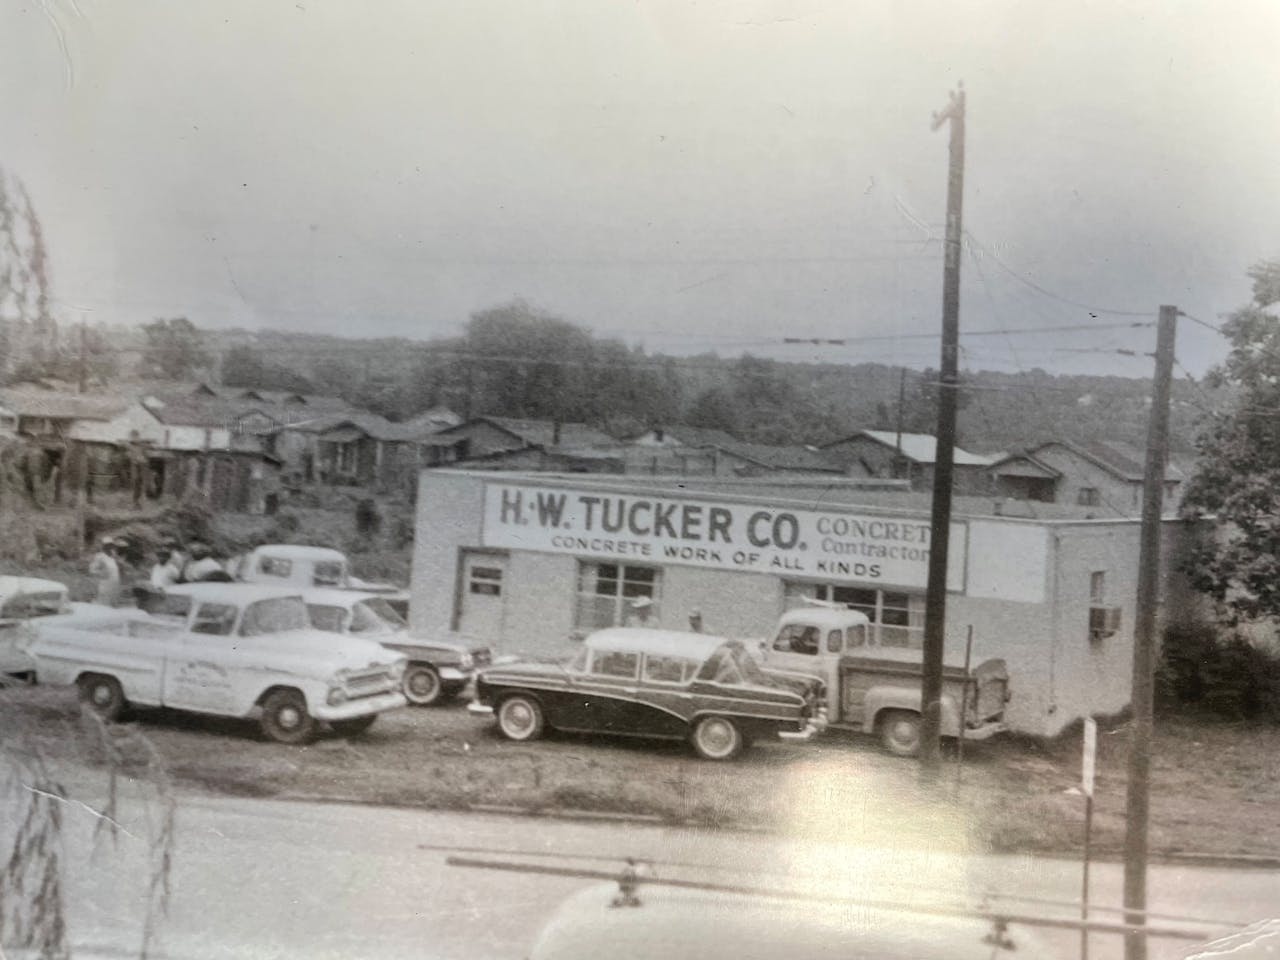 H.W. Tucker Co. headquarters in North Little Rock, Arkansas